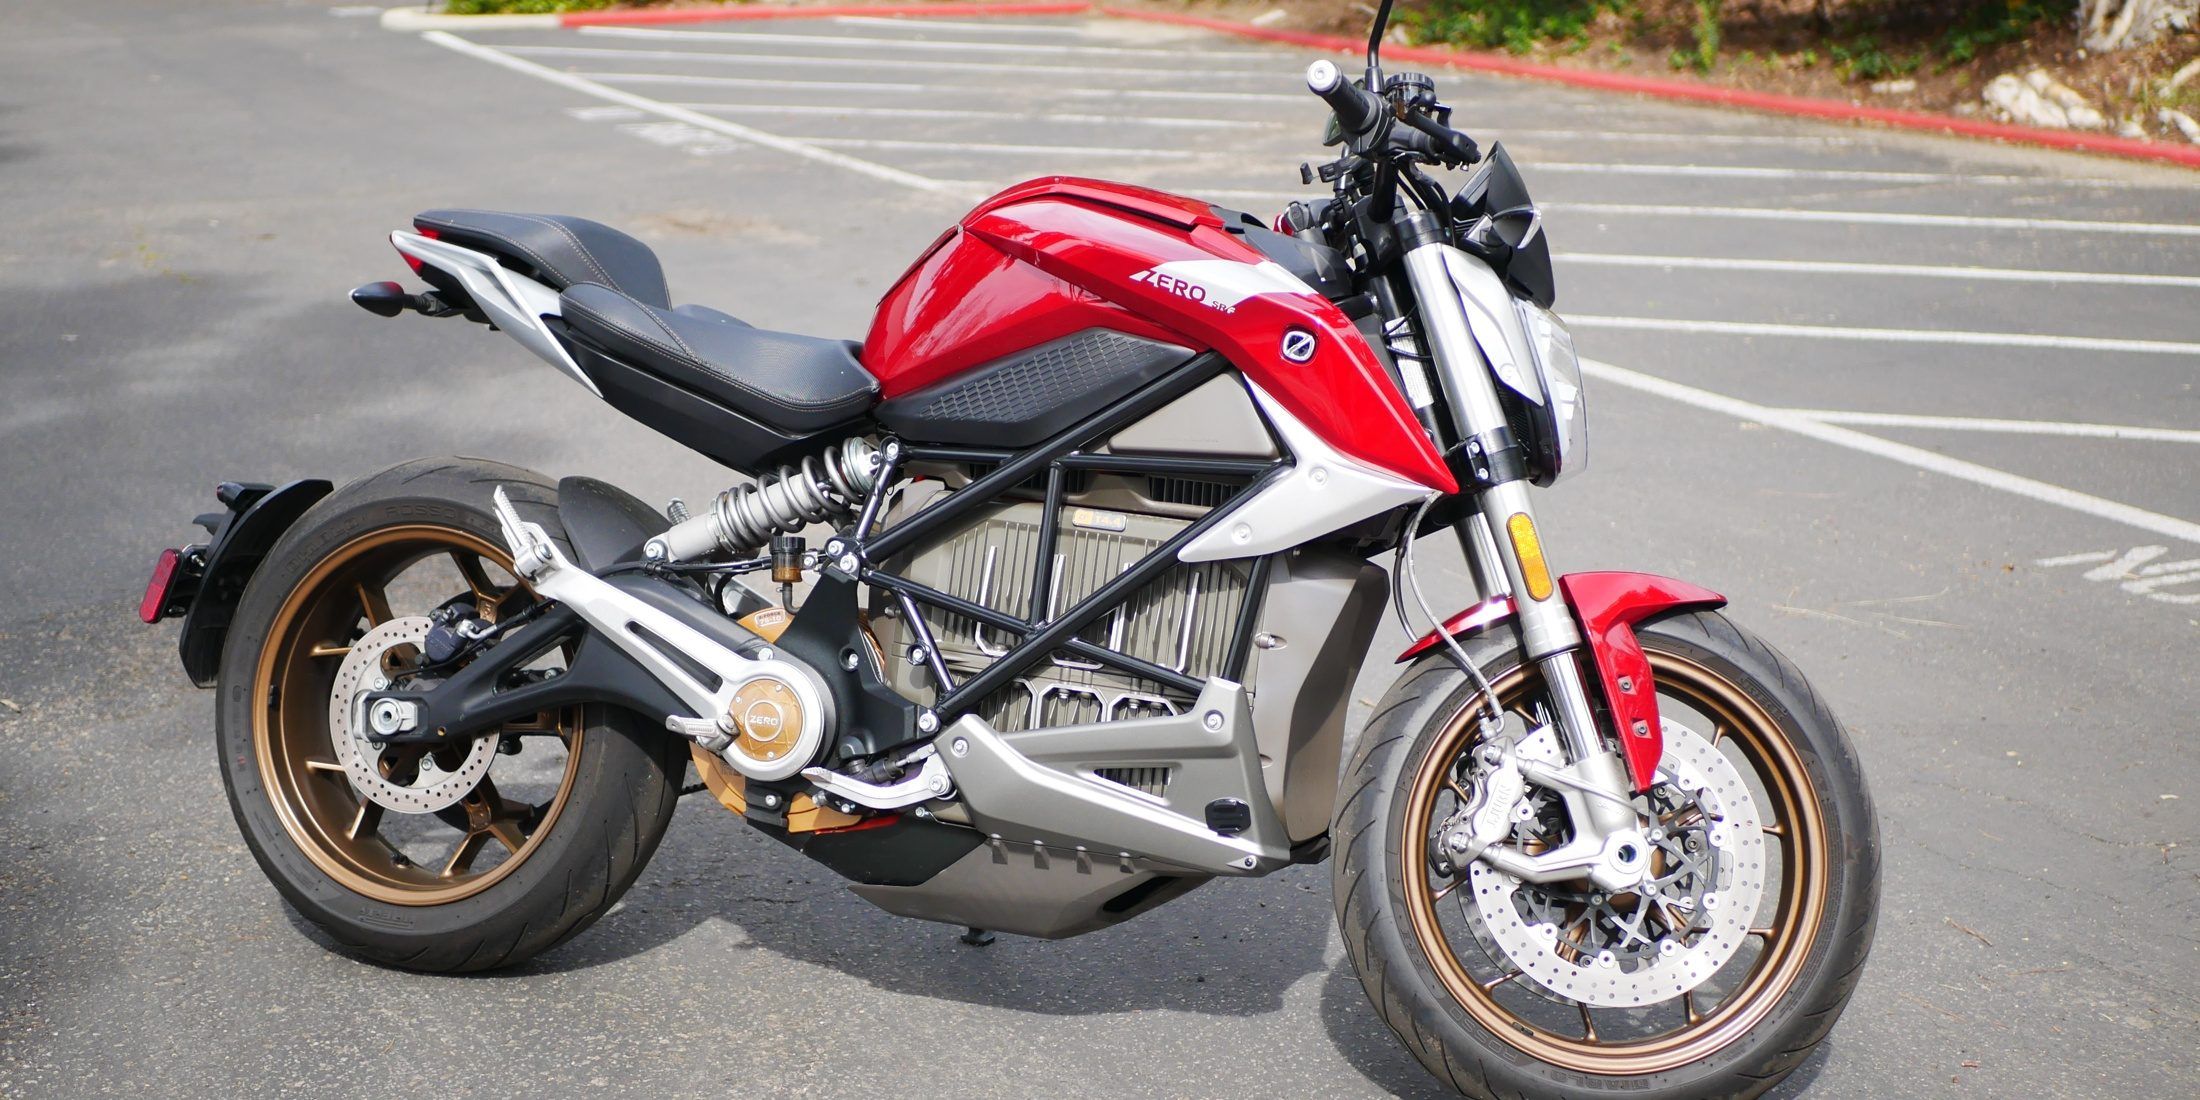 Zero's SR/F Motorcycle